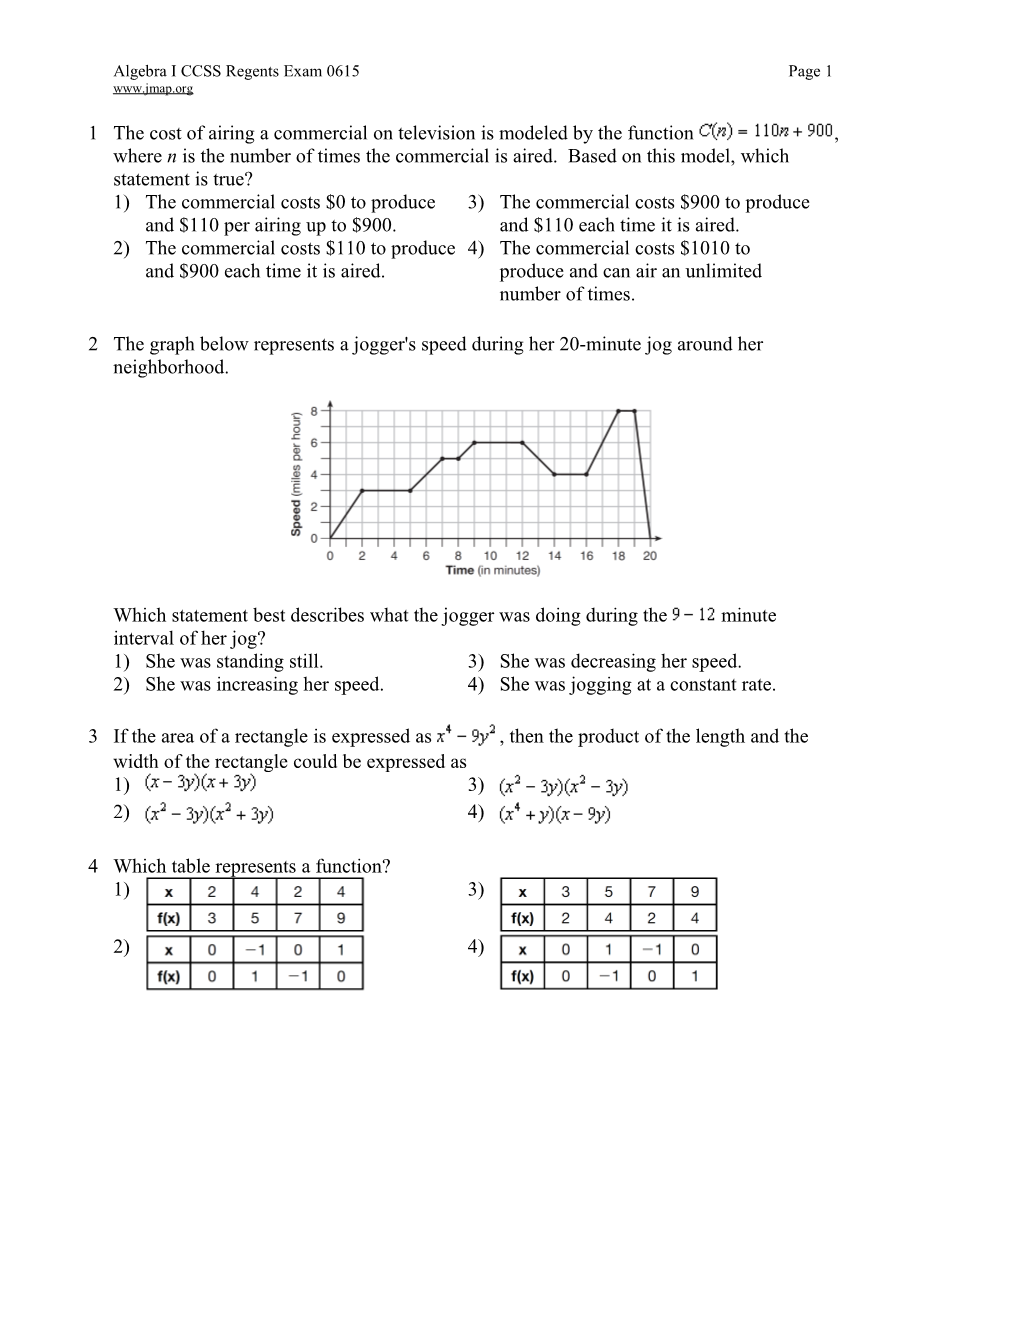 Algebra ICCSS Regents Exam 0615Page 1